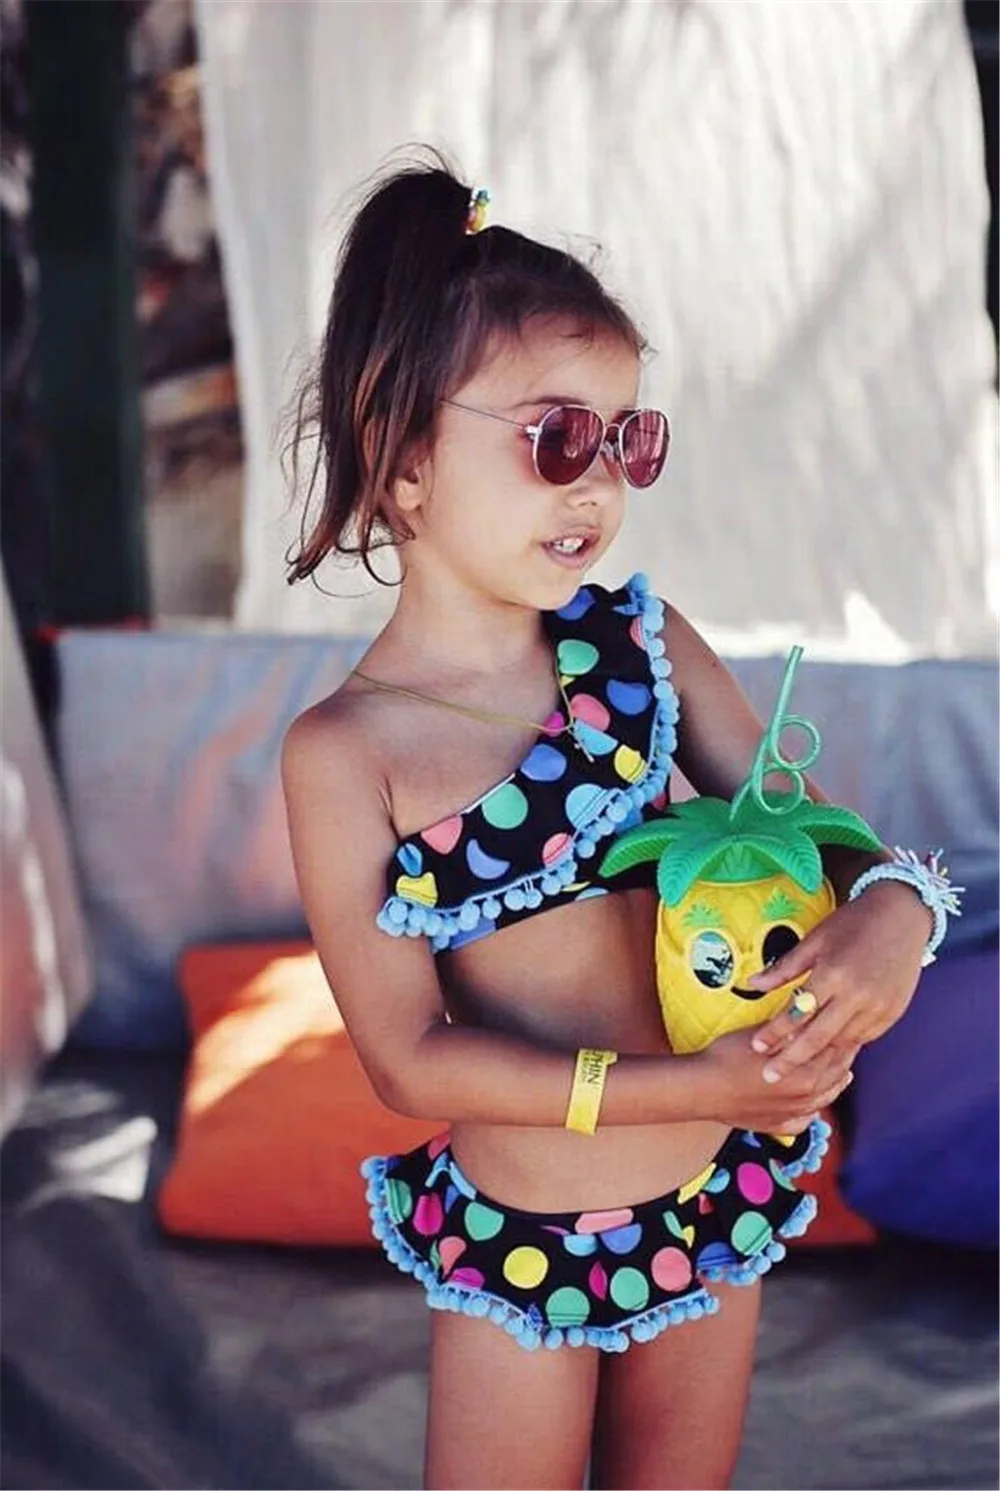 Модный комплект бикини в разноцветный горошек для новорожденных девочек, купальный костюм с кисточками, летний праздничный купальник, От 2 до 7 лет